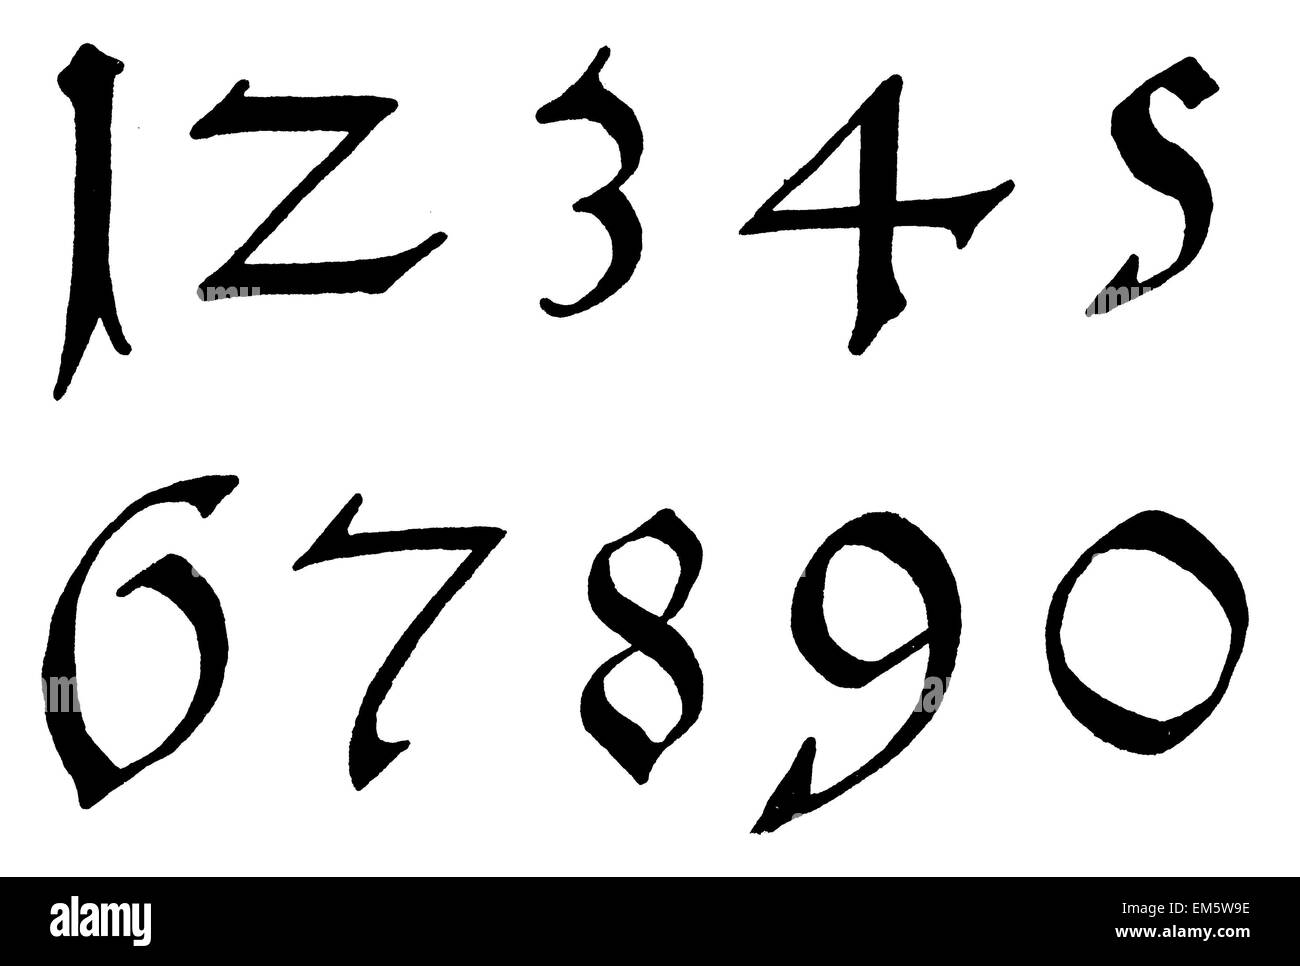 Los números de dígitos , en latón , del siglo XVI. Foto de stock